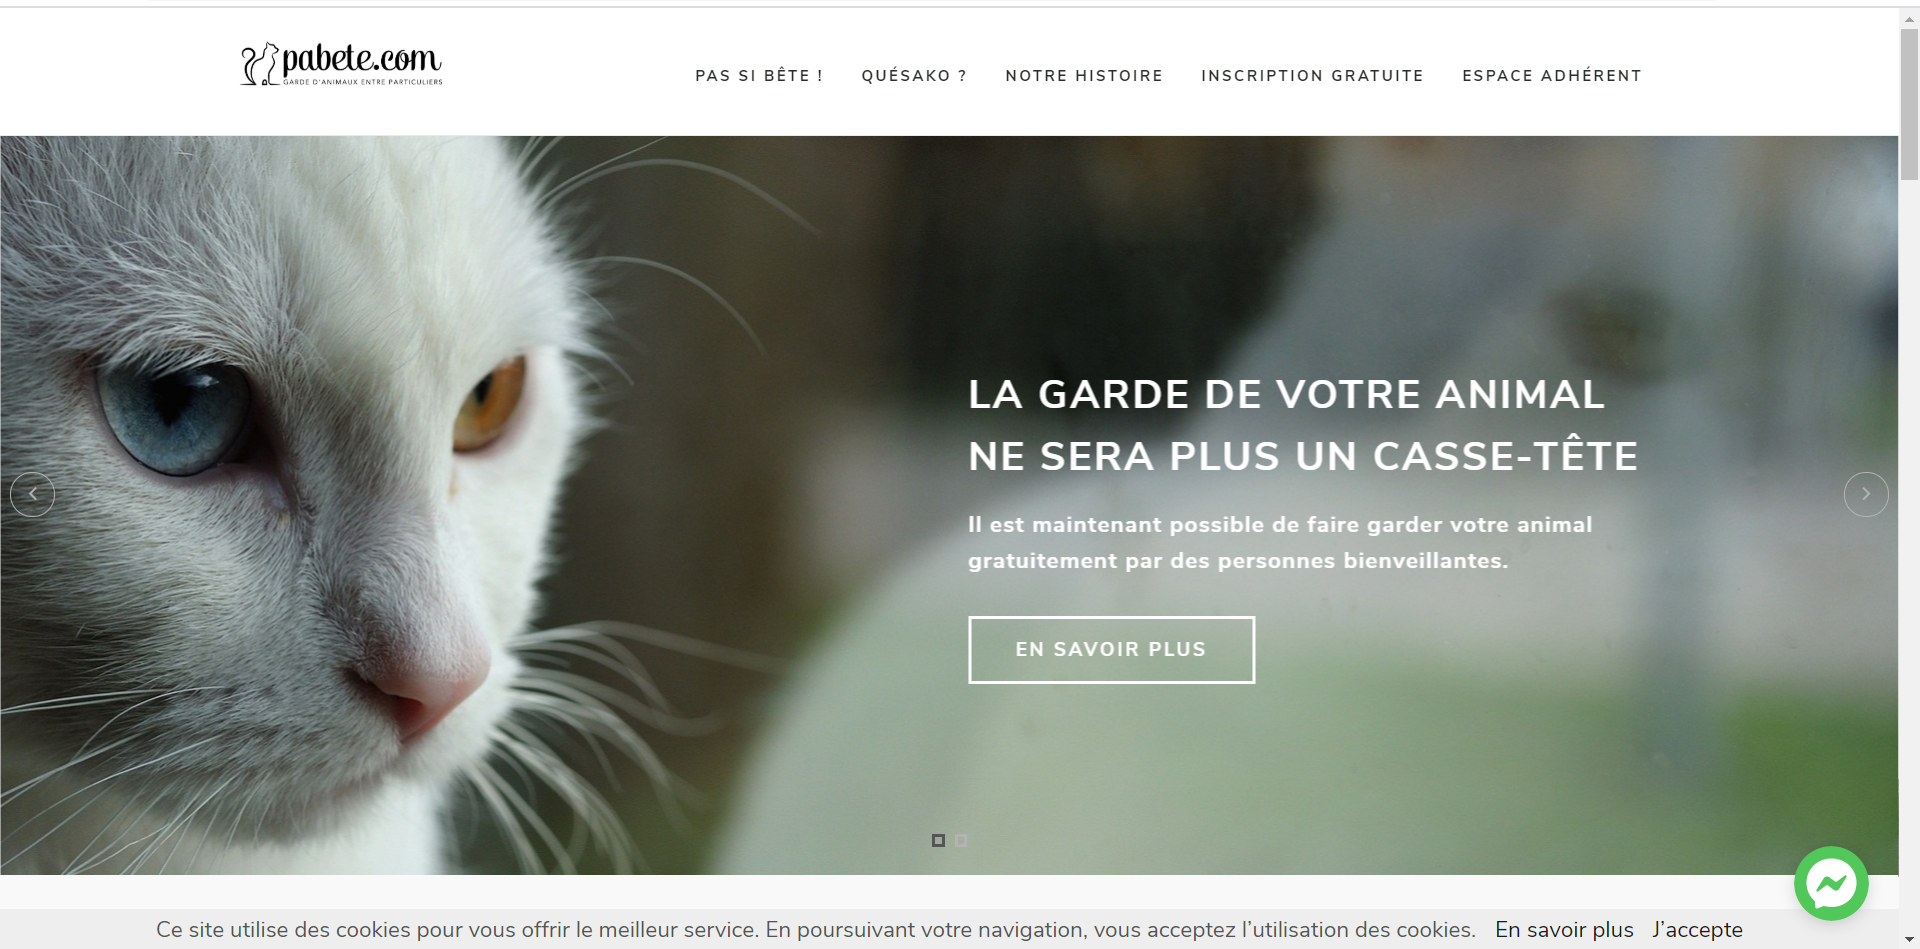 Pabete.com : un service de garde des animaux gratuit pour les personnes touchées par le Covid-19